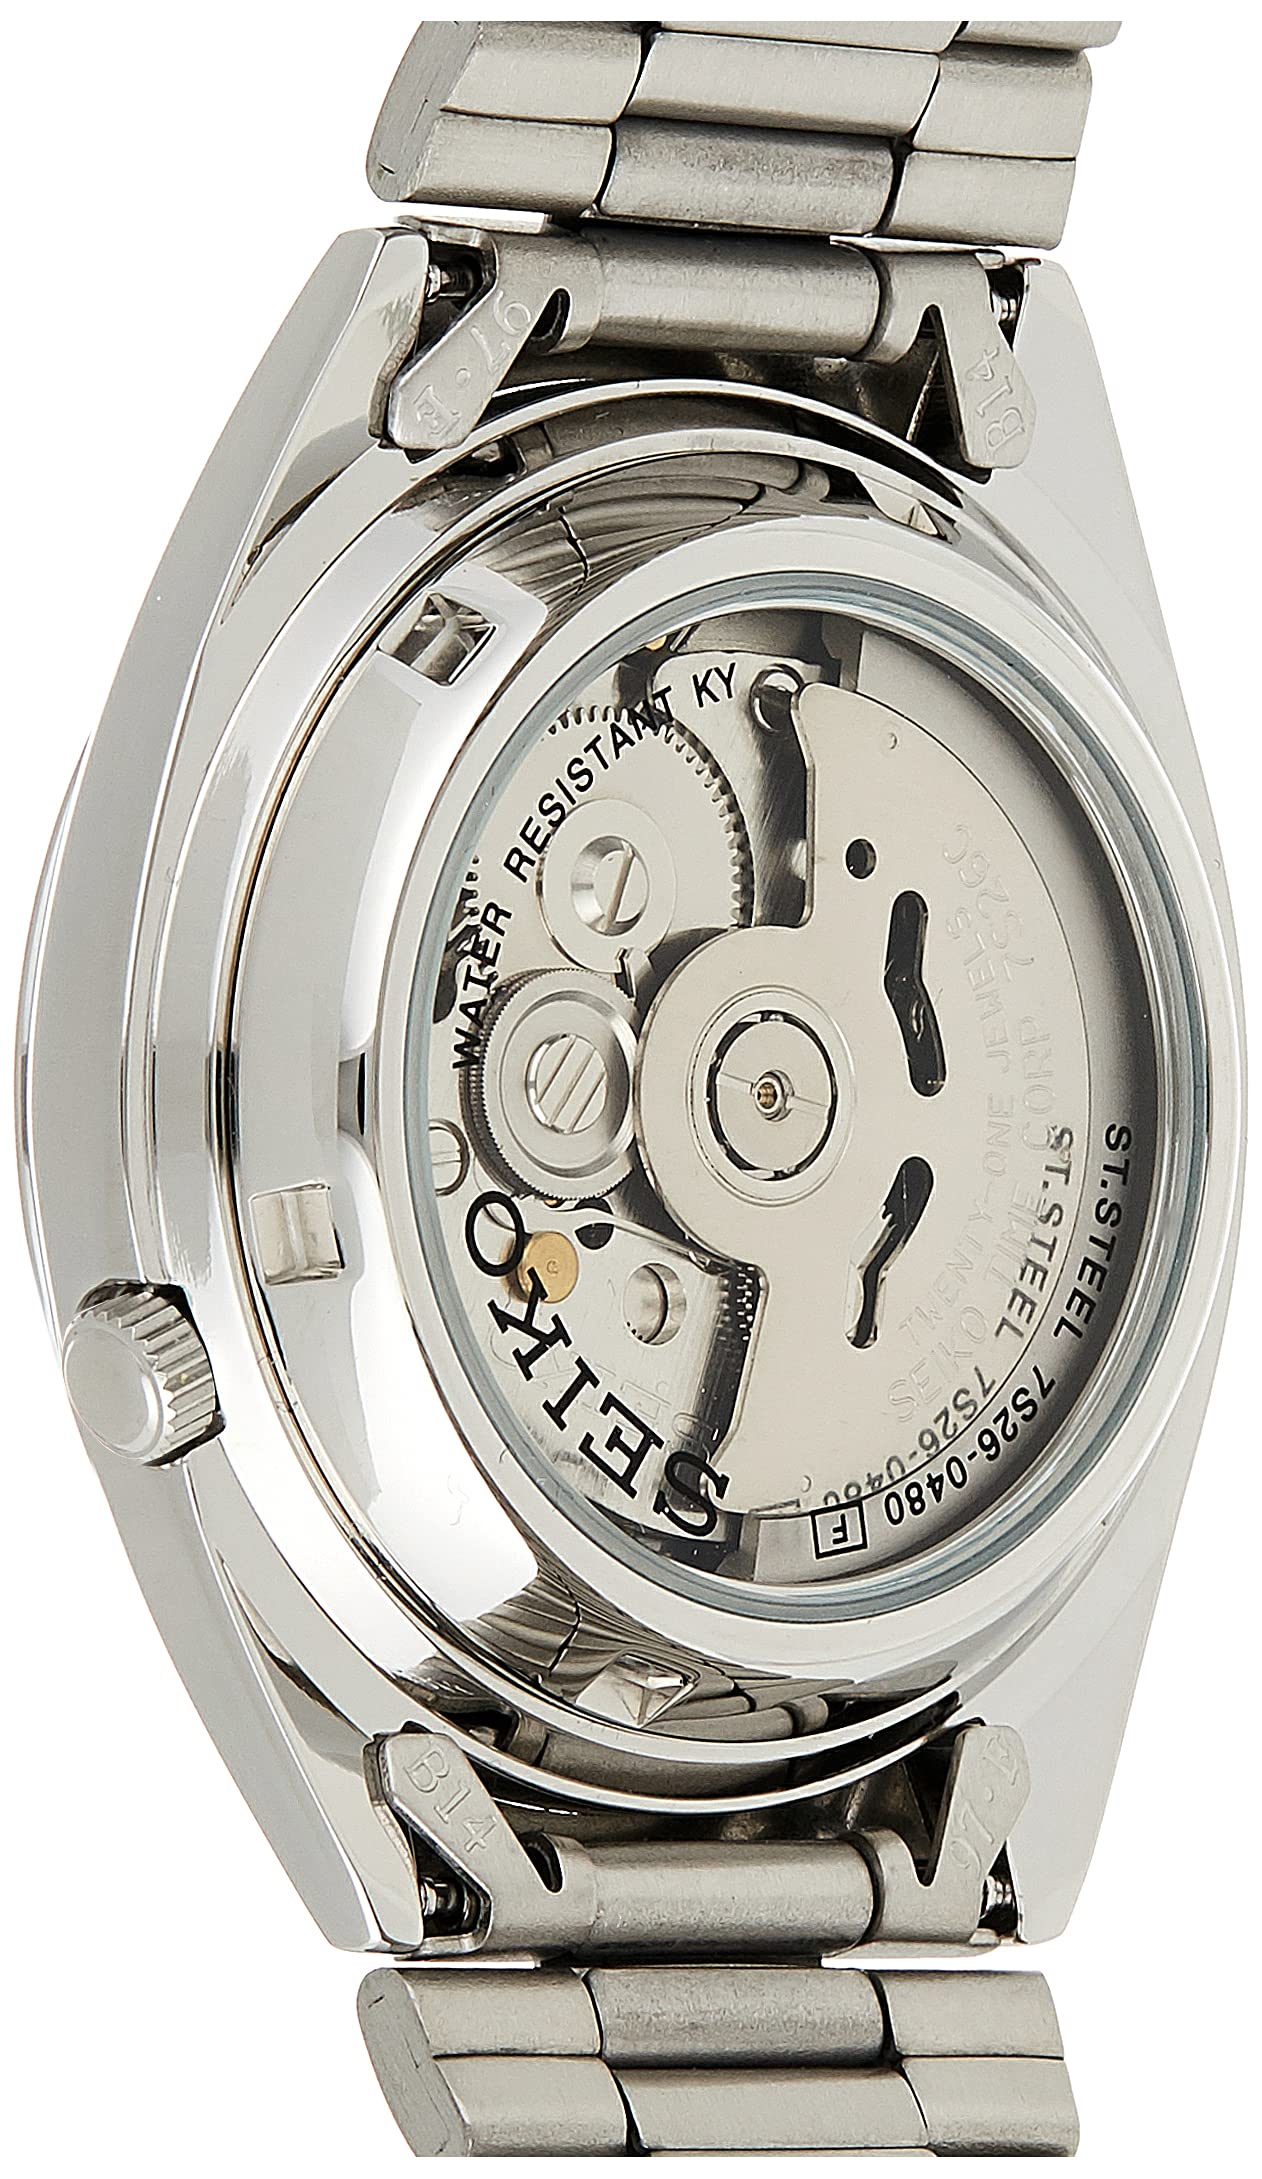 Mua Seiko 5 Men's Stainless Steel Watch trên Amazon Mỹ chính hãng 2023 |  Giaonhan247